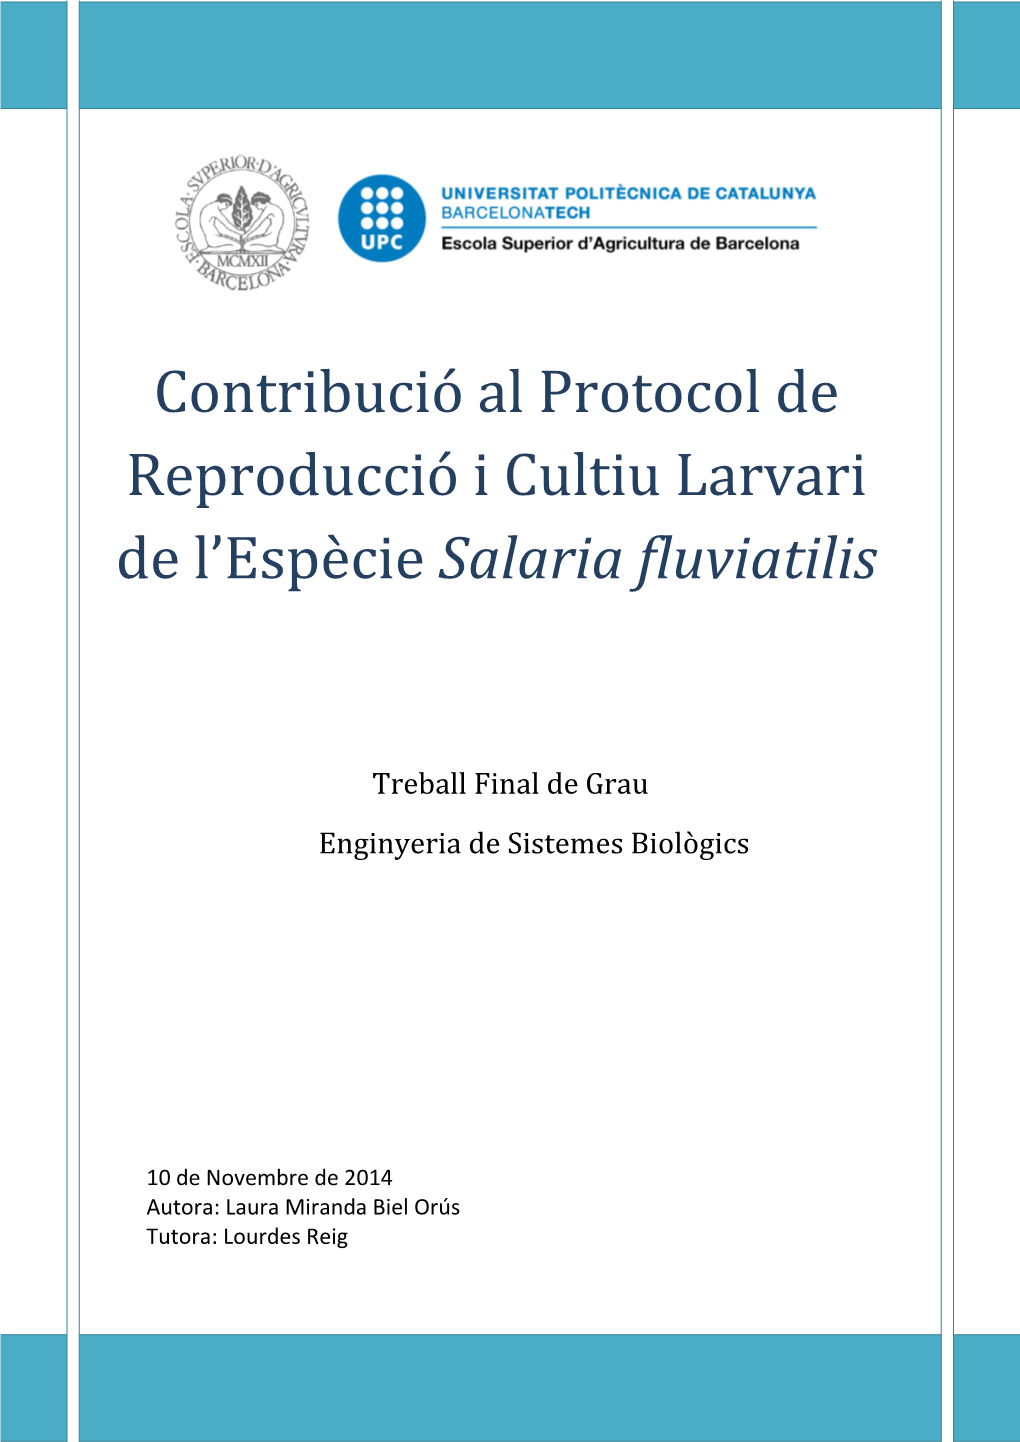 Projecte De Conservació De L'espècie Salaria Fluviatilis